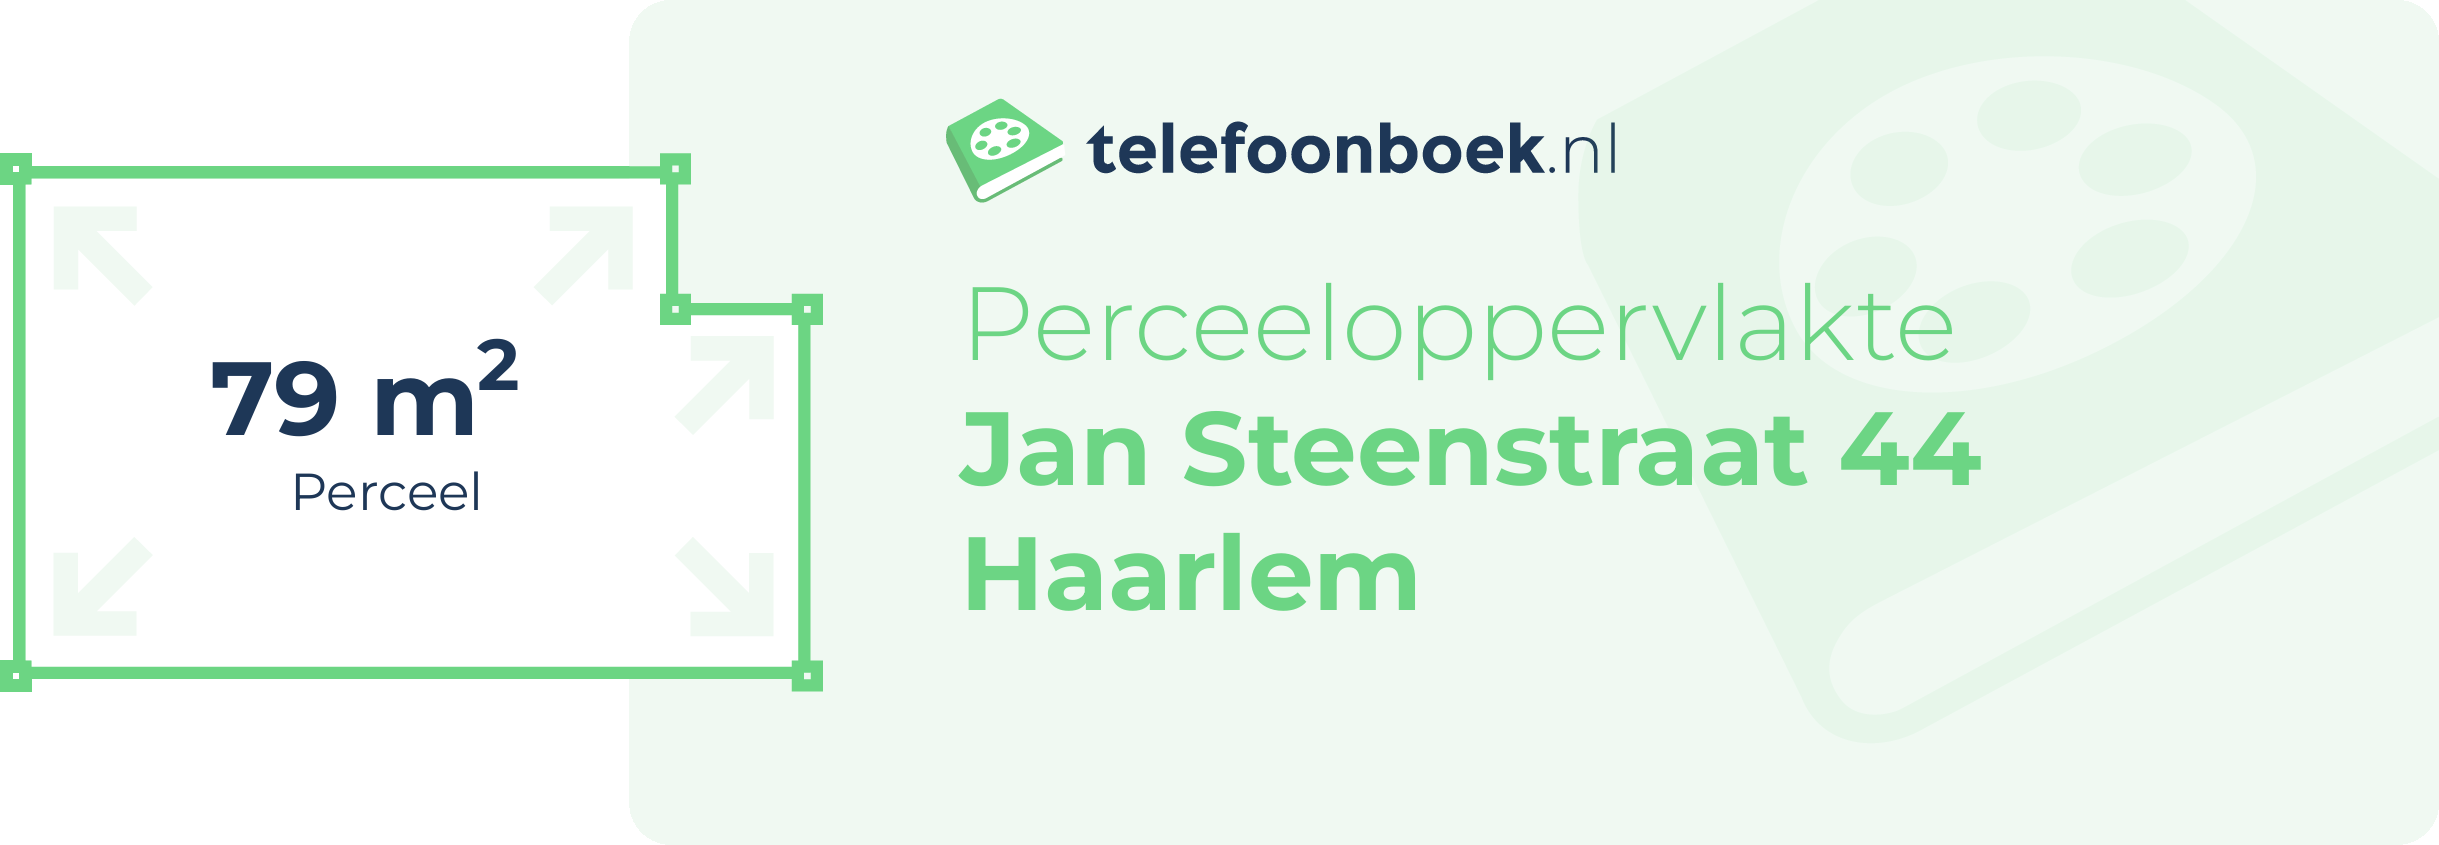 Perceeloppervlakte Jan Steenstraat 44 Haarlem